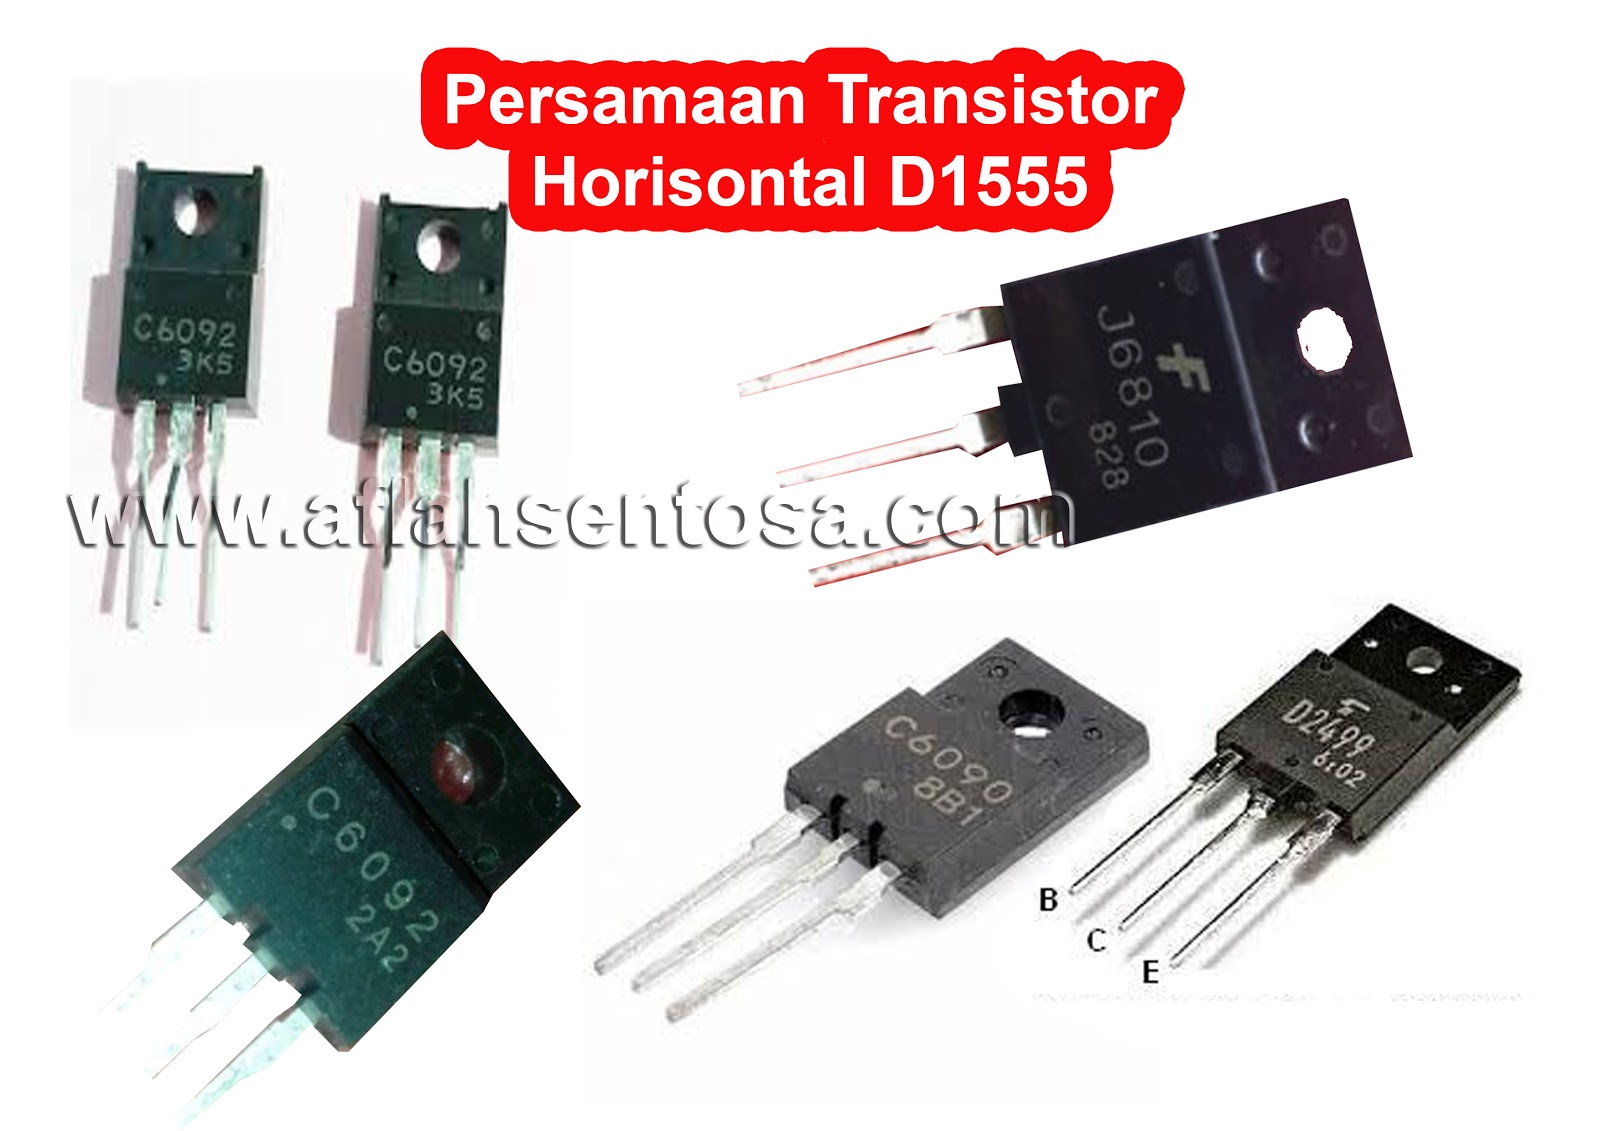 Persamaan Transistor Horisontal D1555 Aflah Sentosa